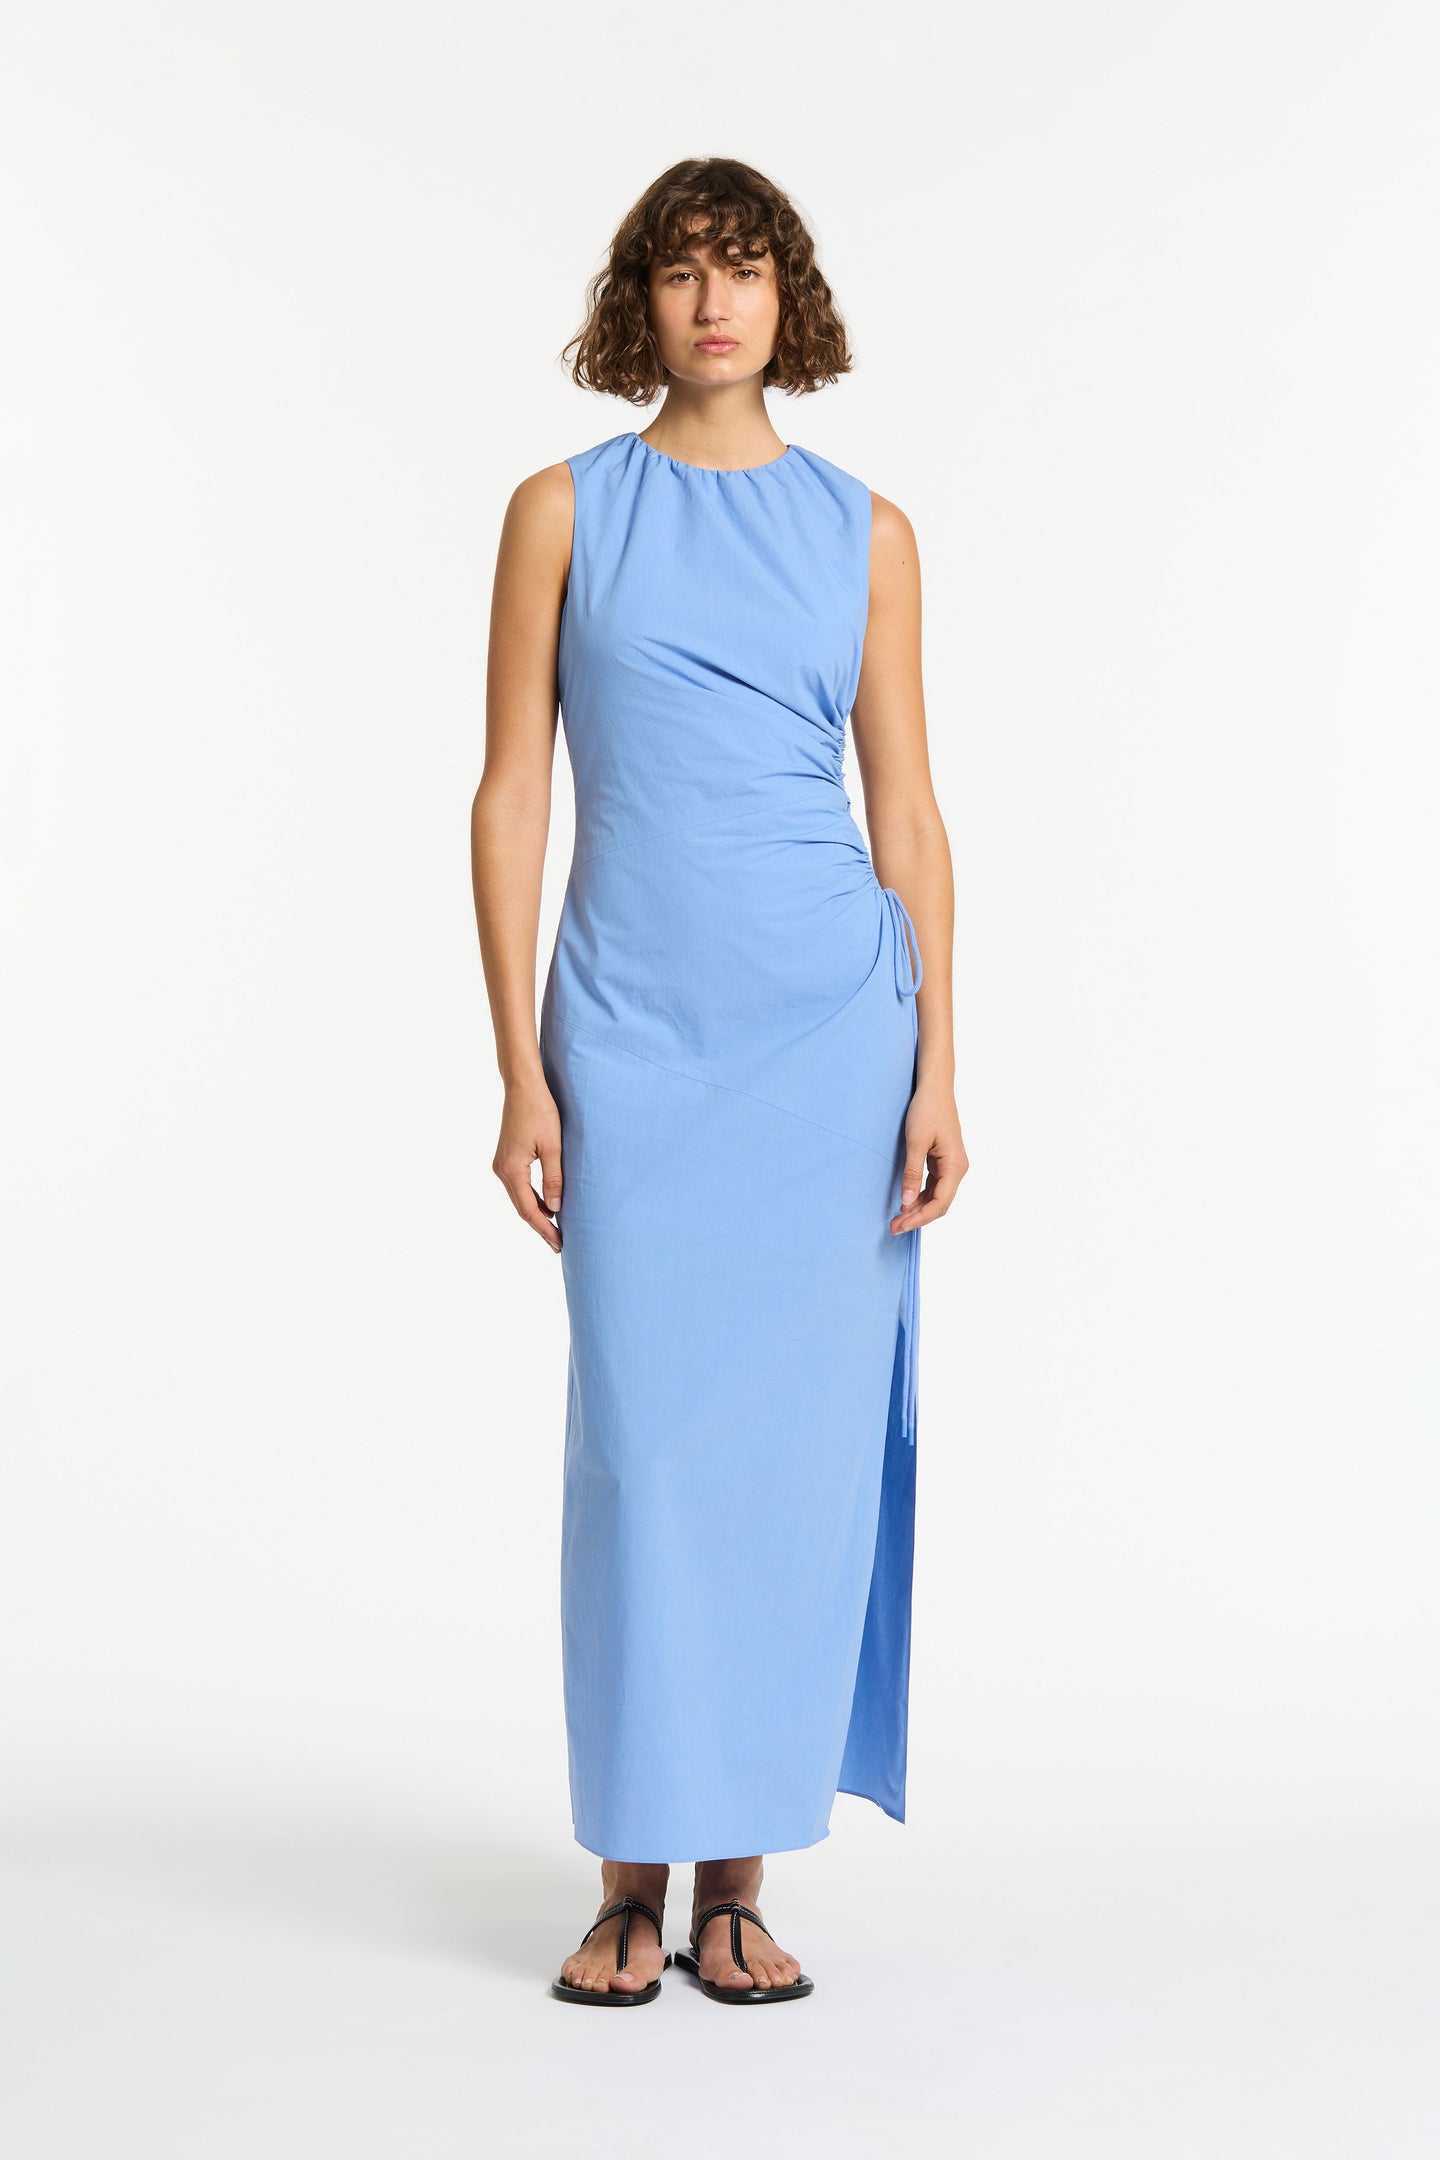 SIR the label Nouveaux Cut Out Dress Ultramarine